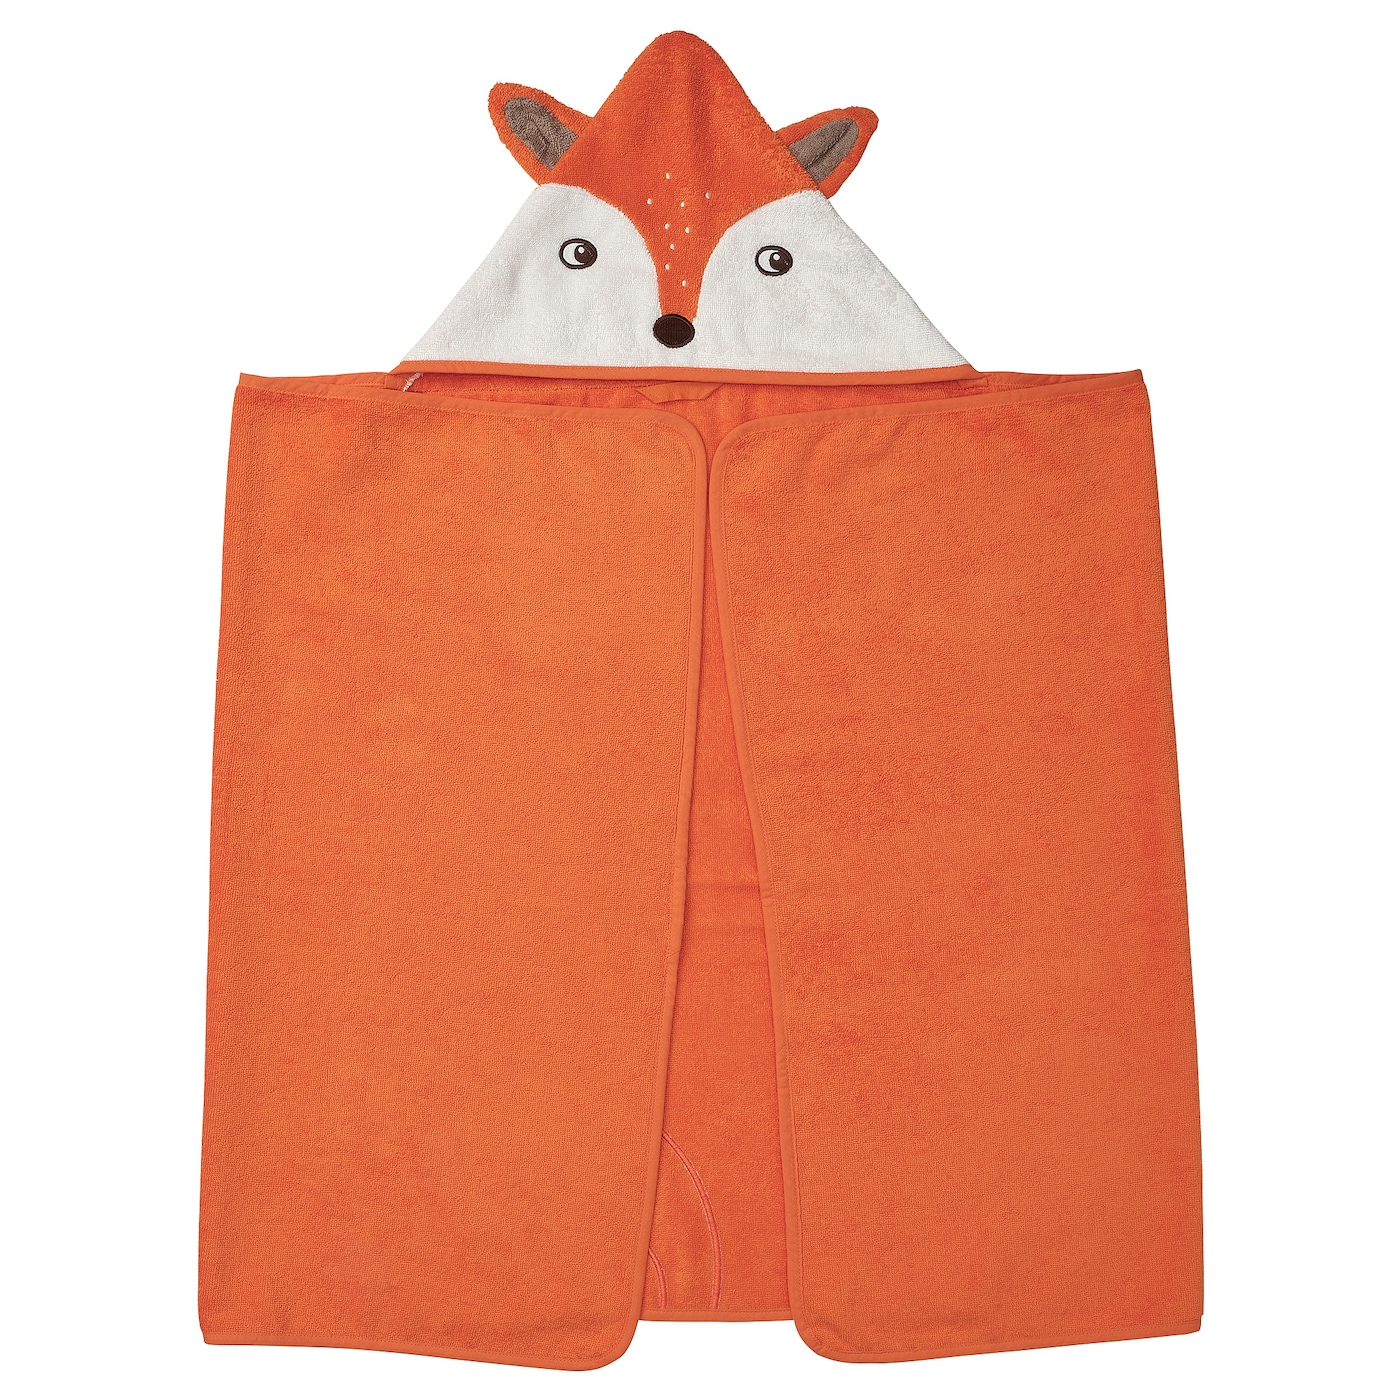 BRUMMIG Полотенце с капюшоном, в форме лисы/оранжевое, 70x140 см IKEA